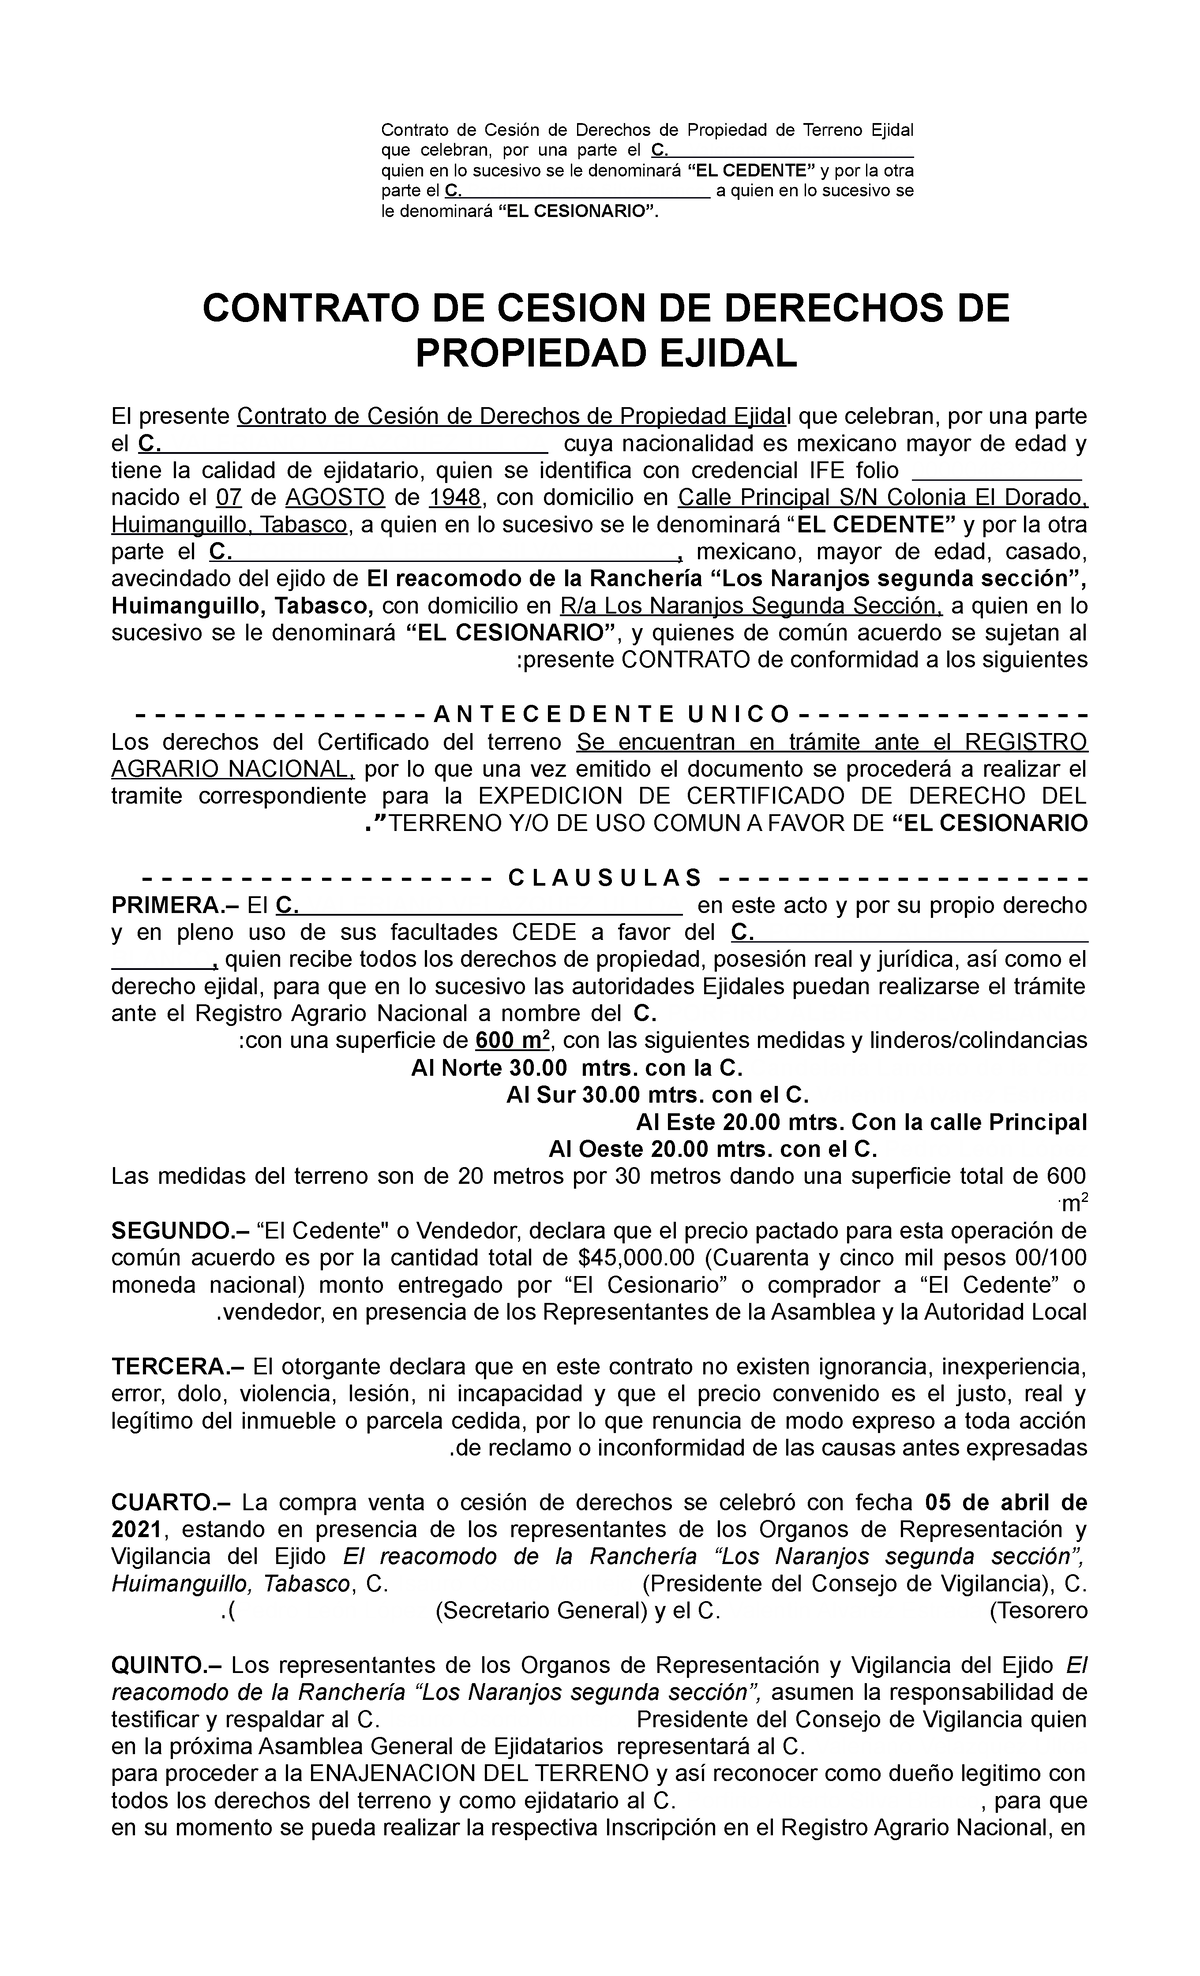 Contrato DE Sesion DE Derechos Ejidales - CONTRATO DE CESION DE DERECHOS DE  PROPIEDAD EJIDAL El - Studocu